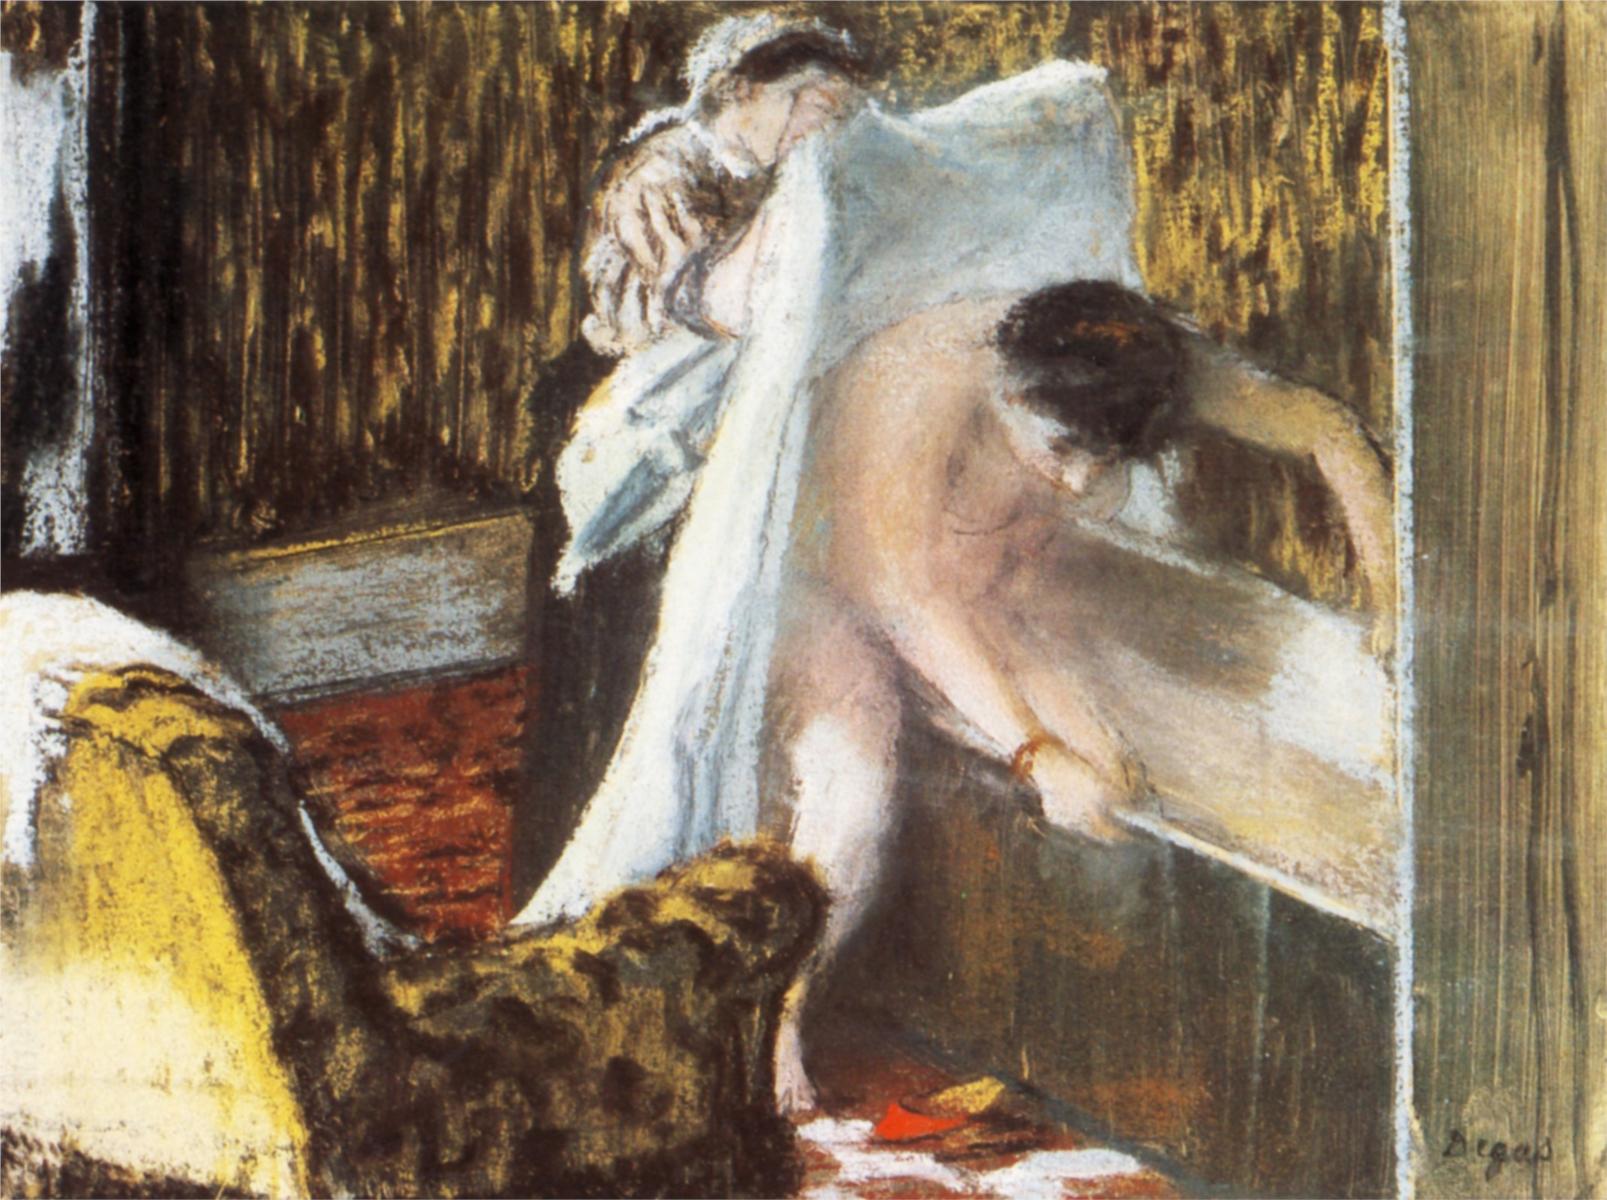 Эдгар Дега. "Женщина, вылезающая из ванны". 1877.